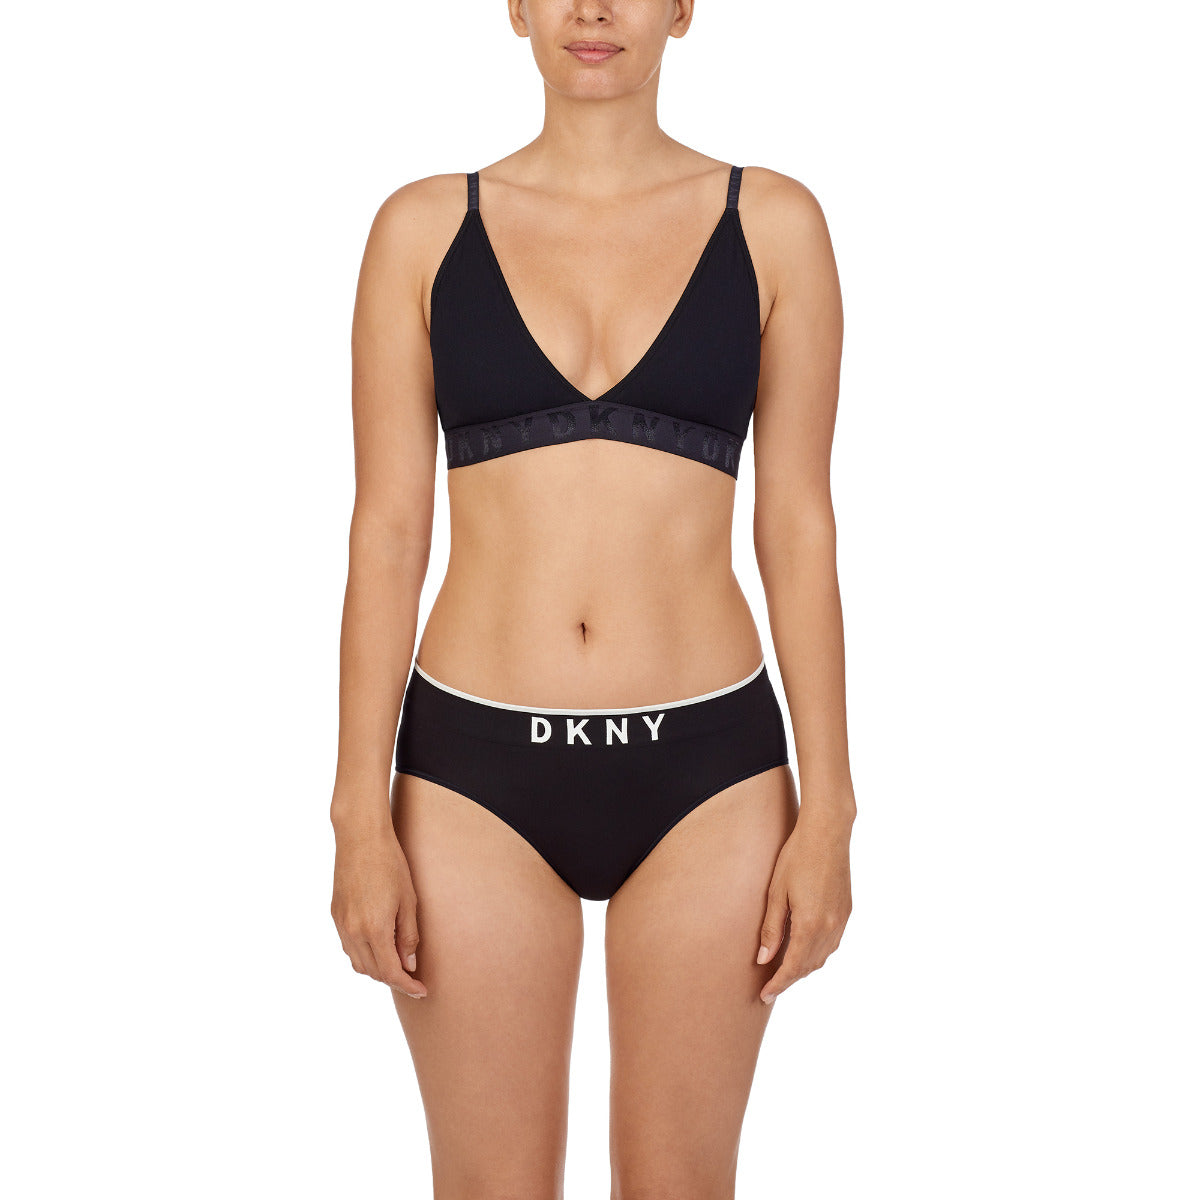 DKNY Women's Seamless Litewear Rib Bralette Bra